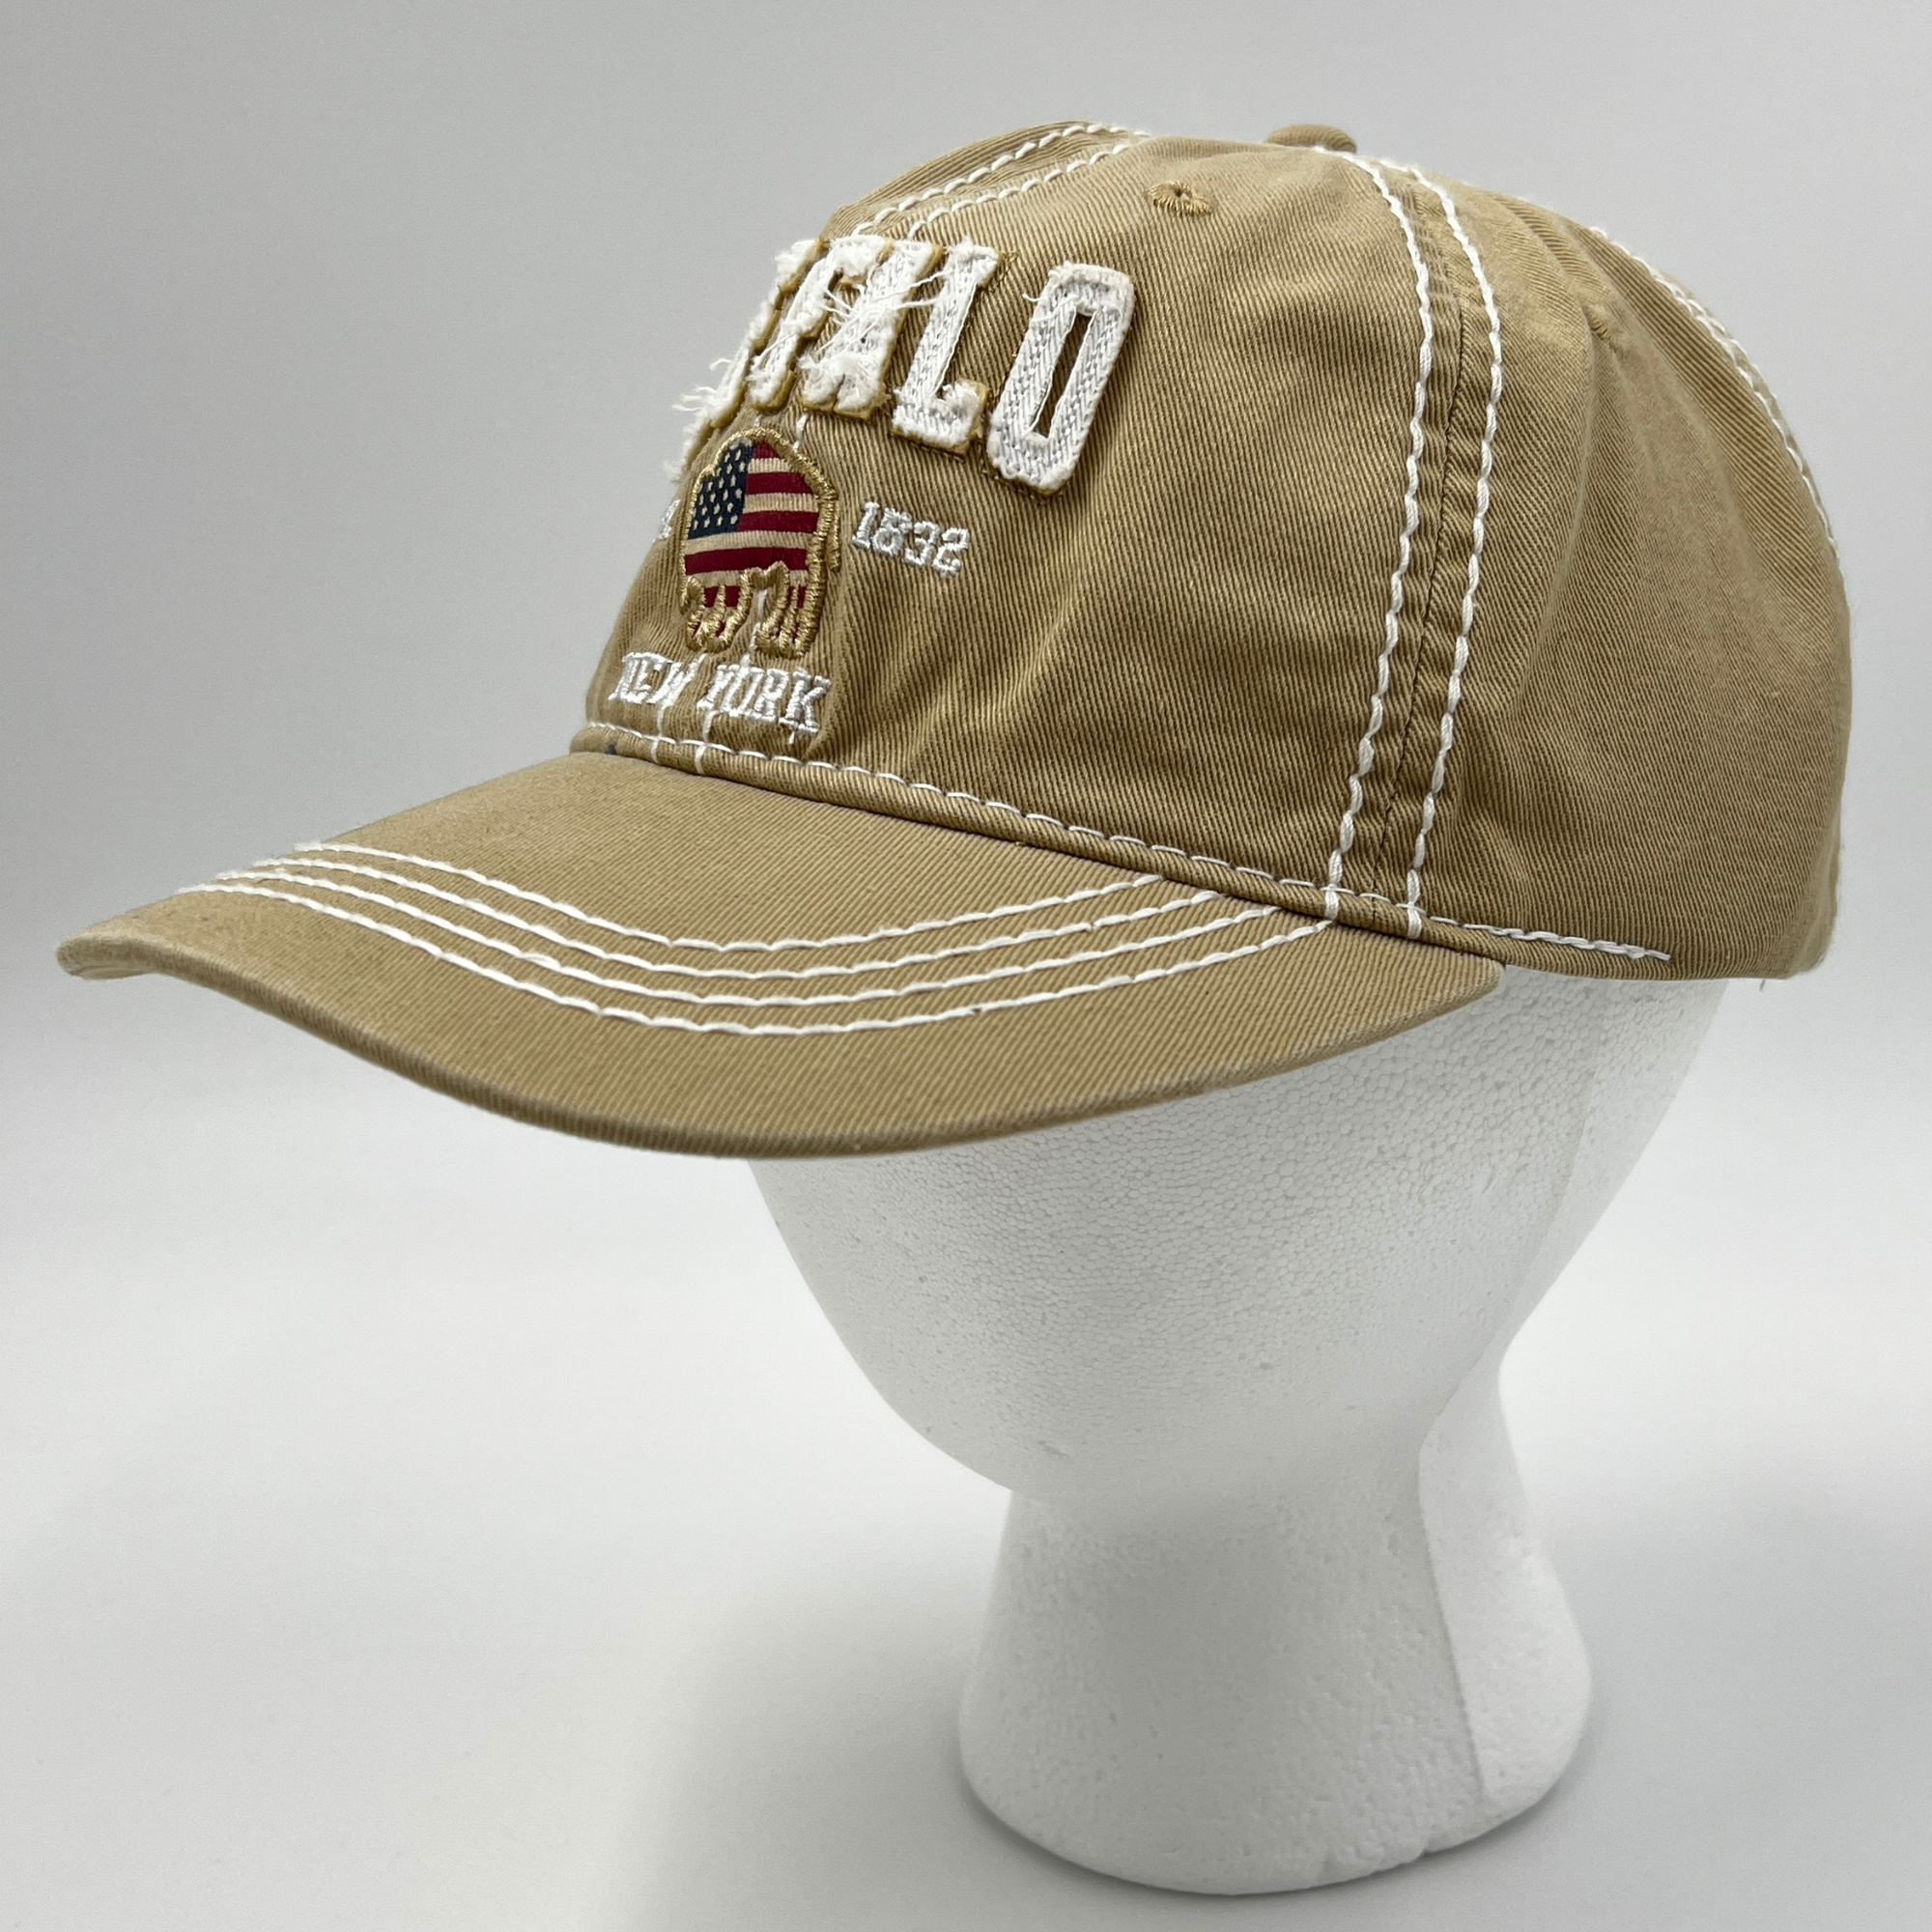 Buffalo, NY Tan Adjustable Hat